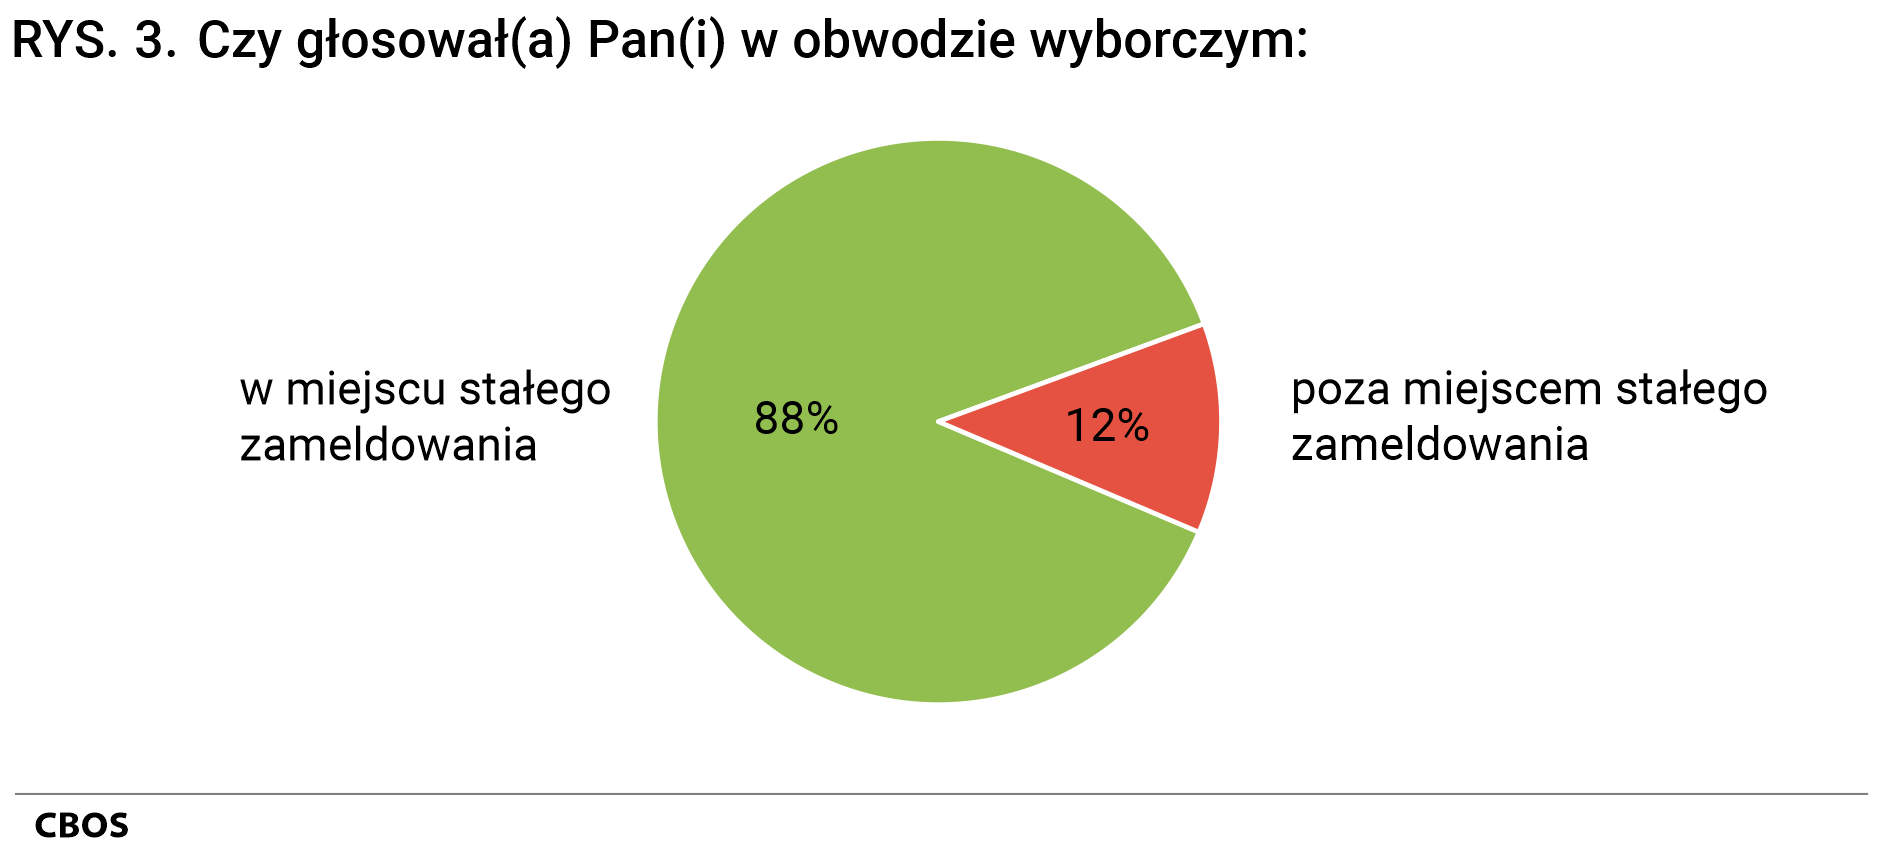 Rysunek 3 - Czy głosował Pan(głosowała Pani) w obwodzie wyborczym: w miejscu stałego zameldowania - 88%, poza miejscem stałego zameldowania - 12%.